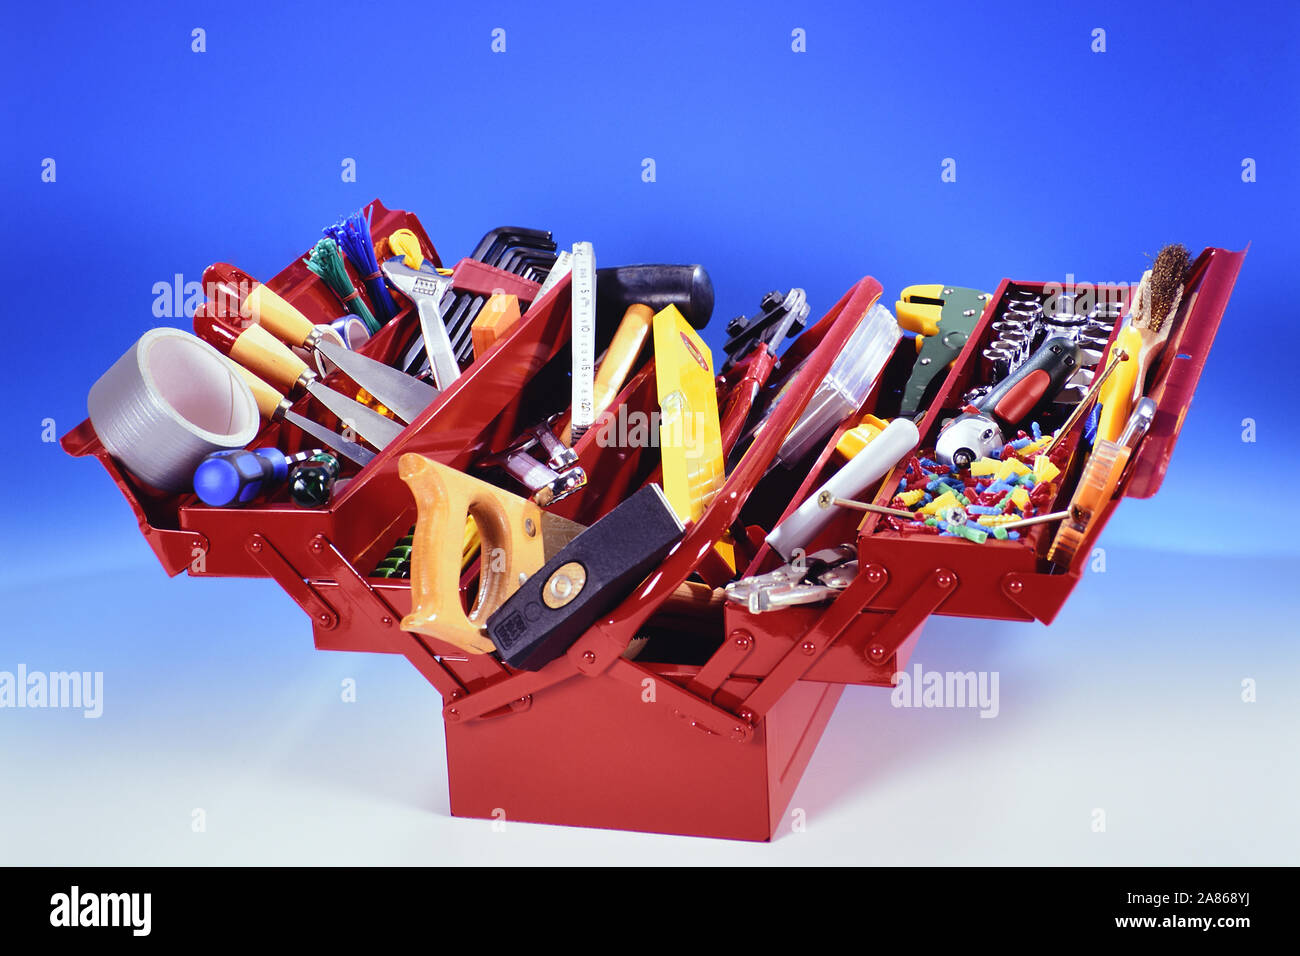 Roter Werkzeugkasten mit Werkzeug Stock Photo